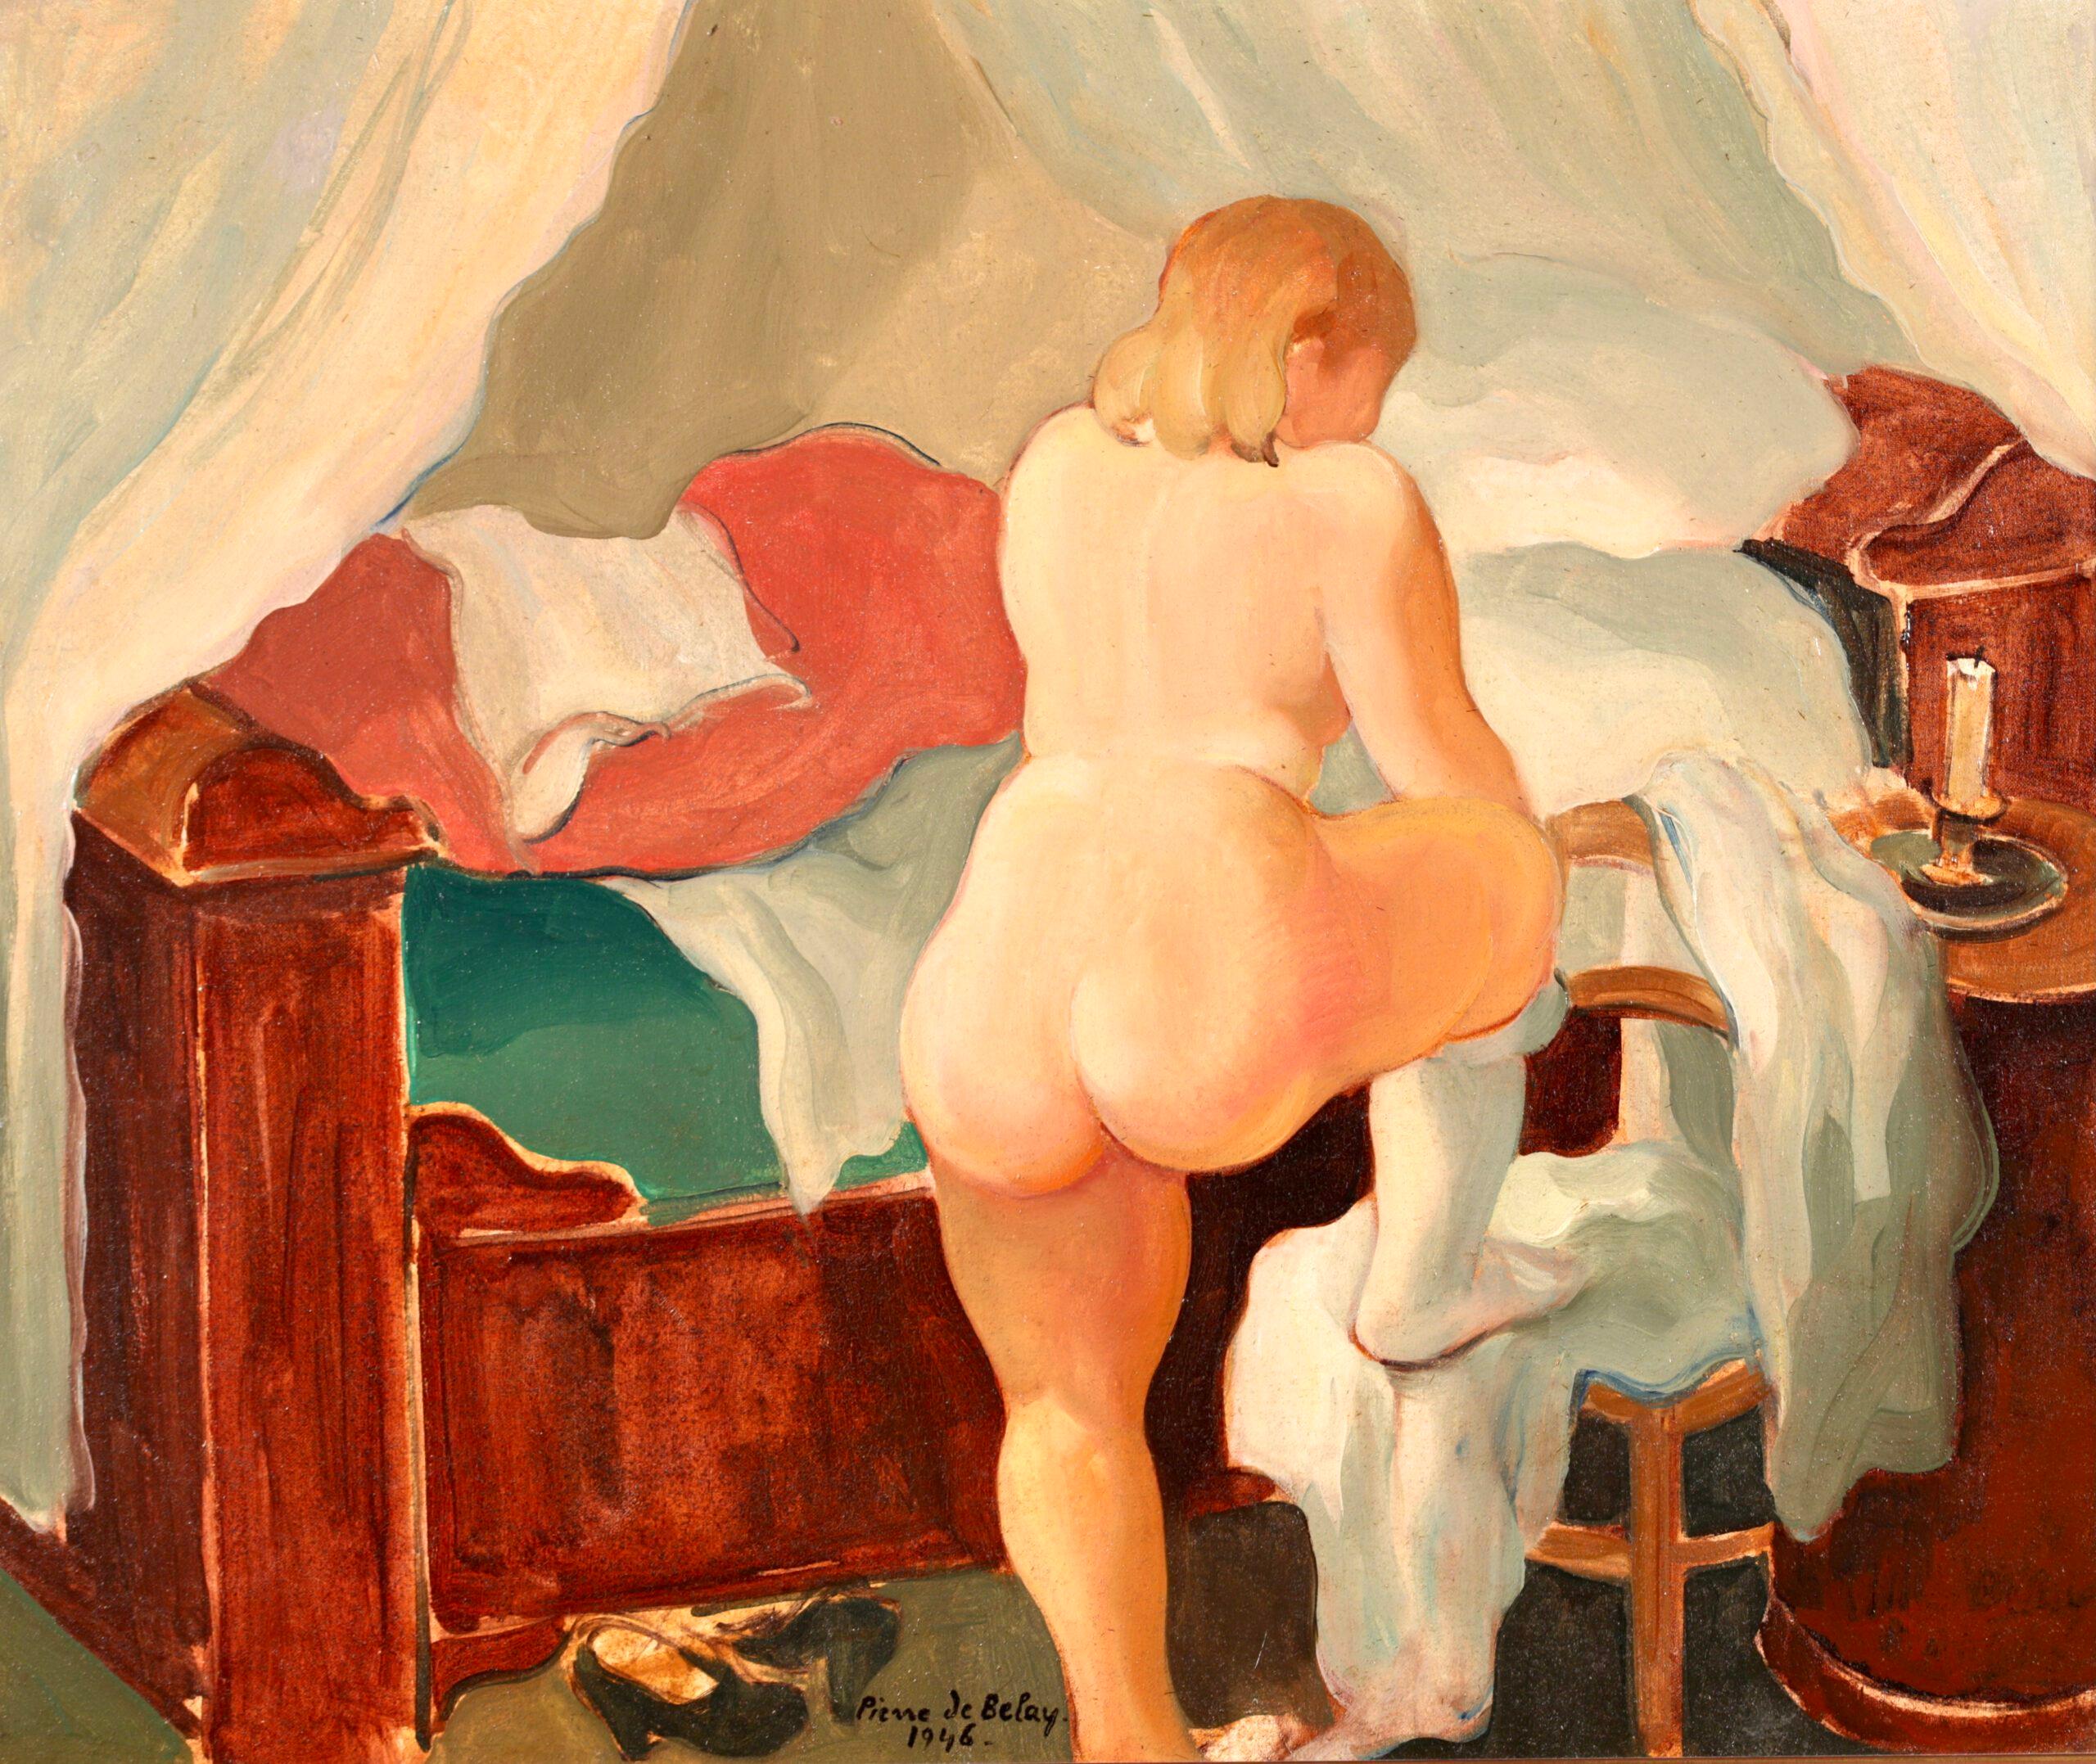 Le Coucher – Postimpressionistischer Akt im Interieur, Ölgemälde von Pierre de Belay